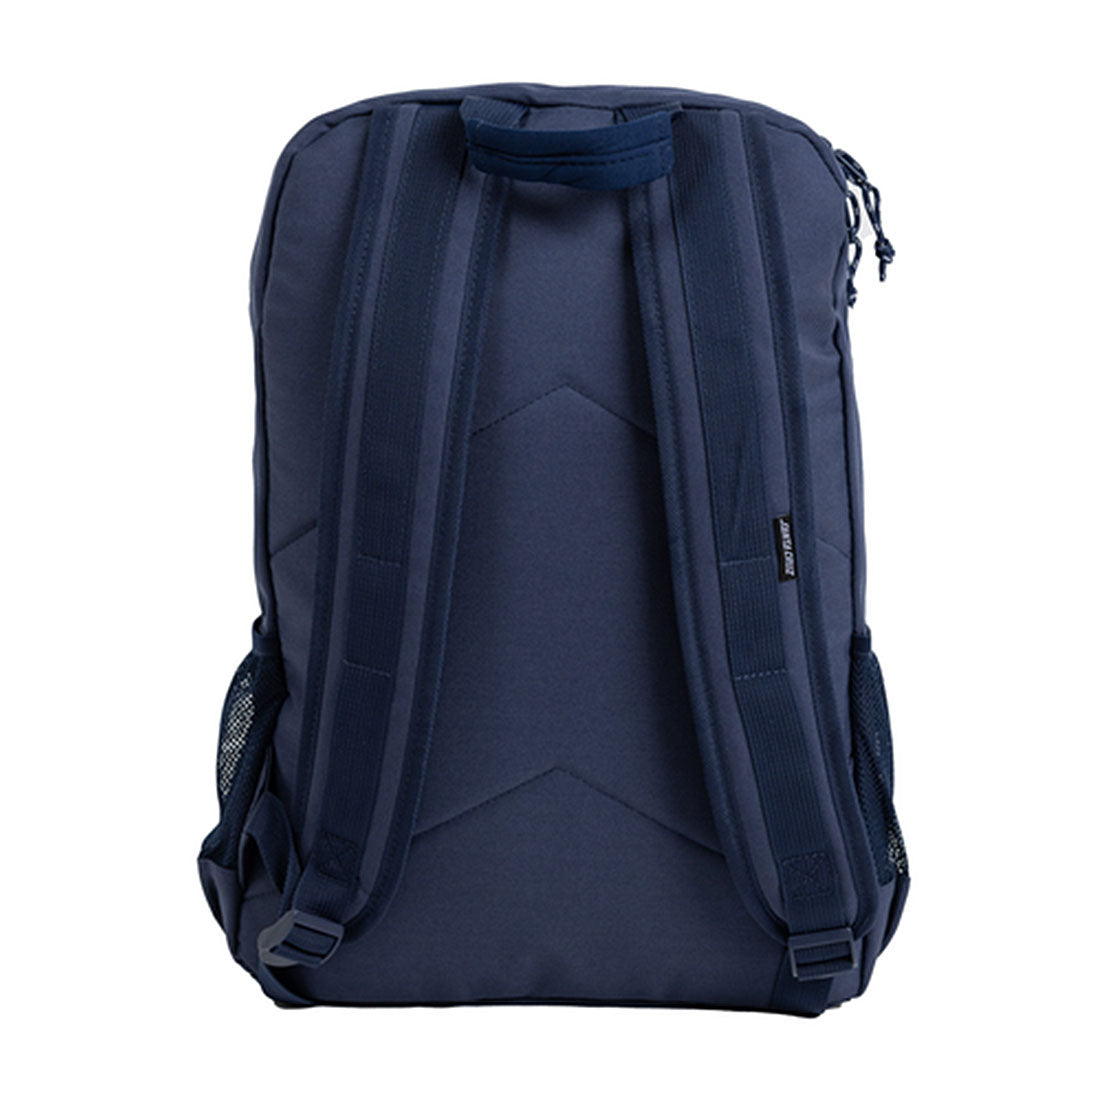 Santa Cruz Vertical Toil Strip Backpack - Navy Bags and Backpacks